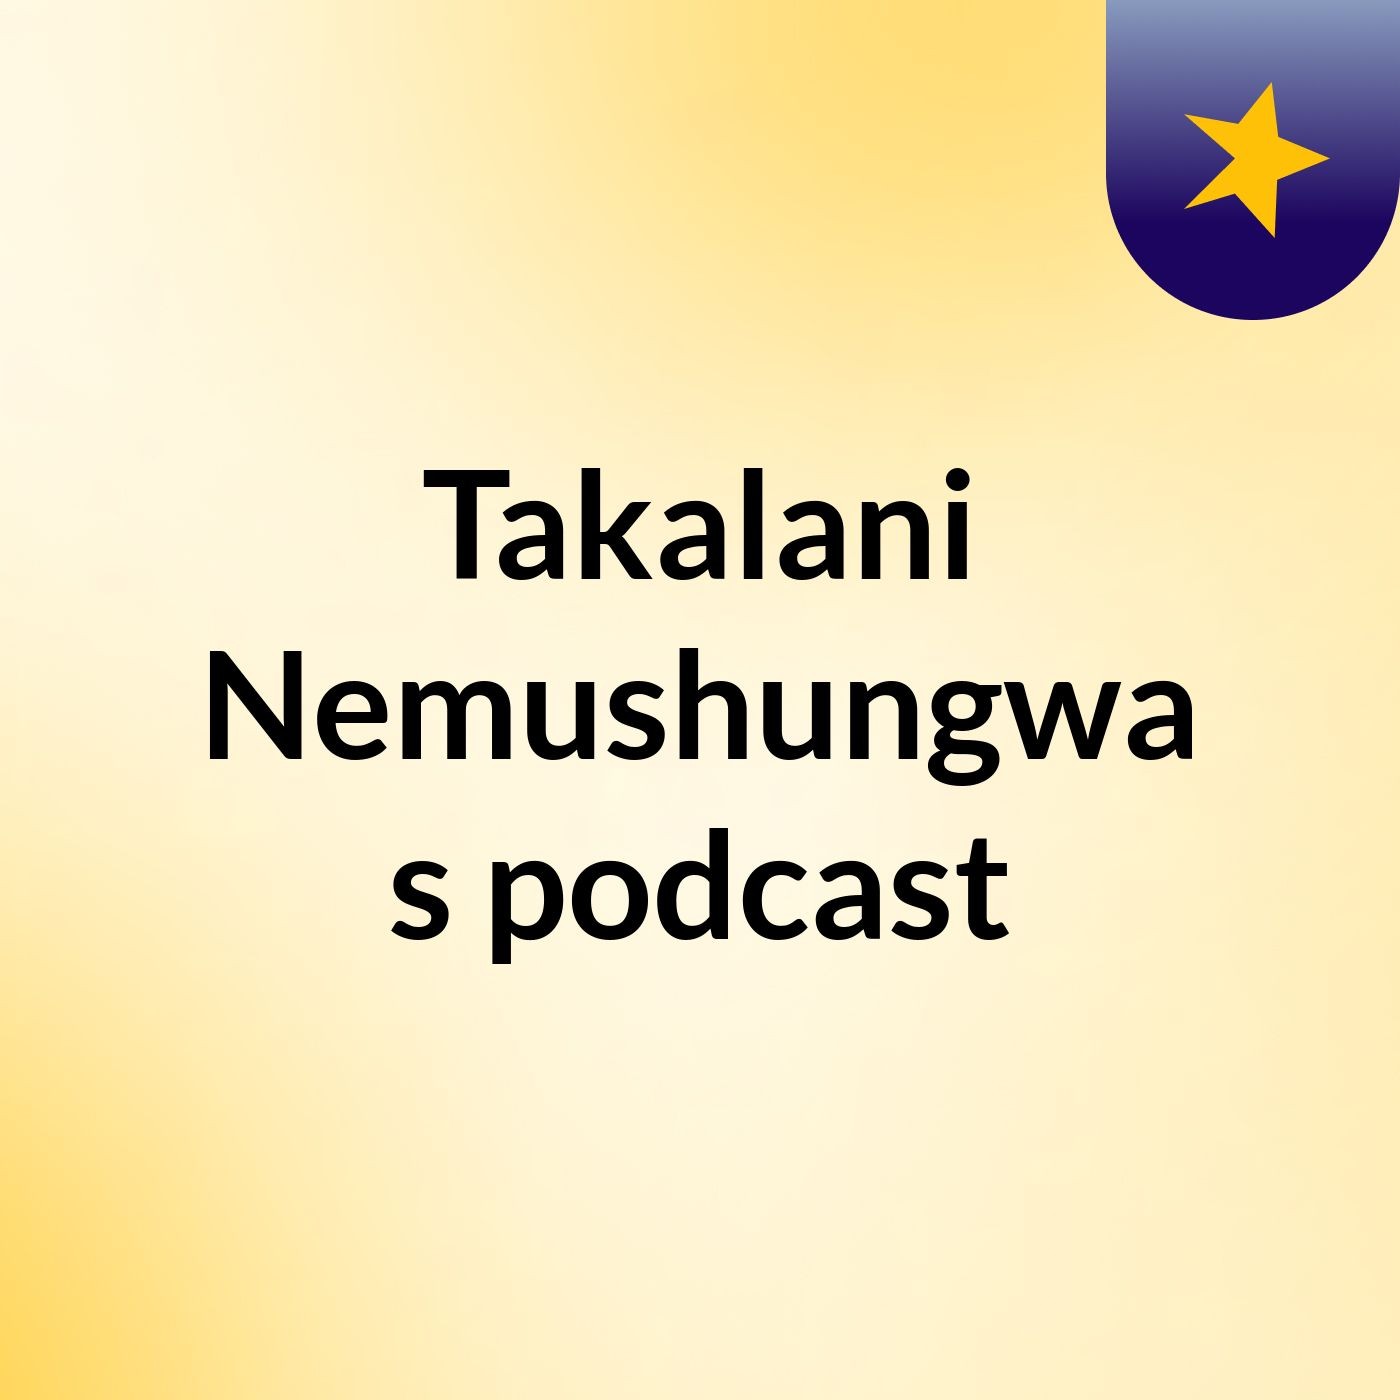 Takalani Nemushungwa's podcast